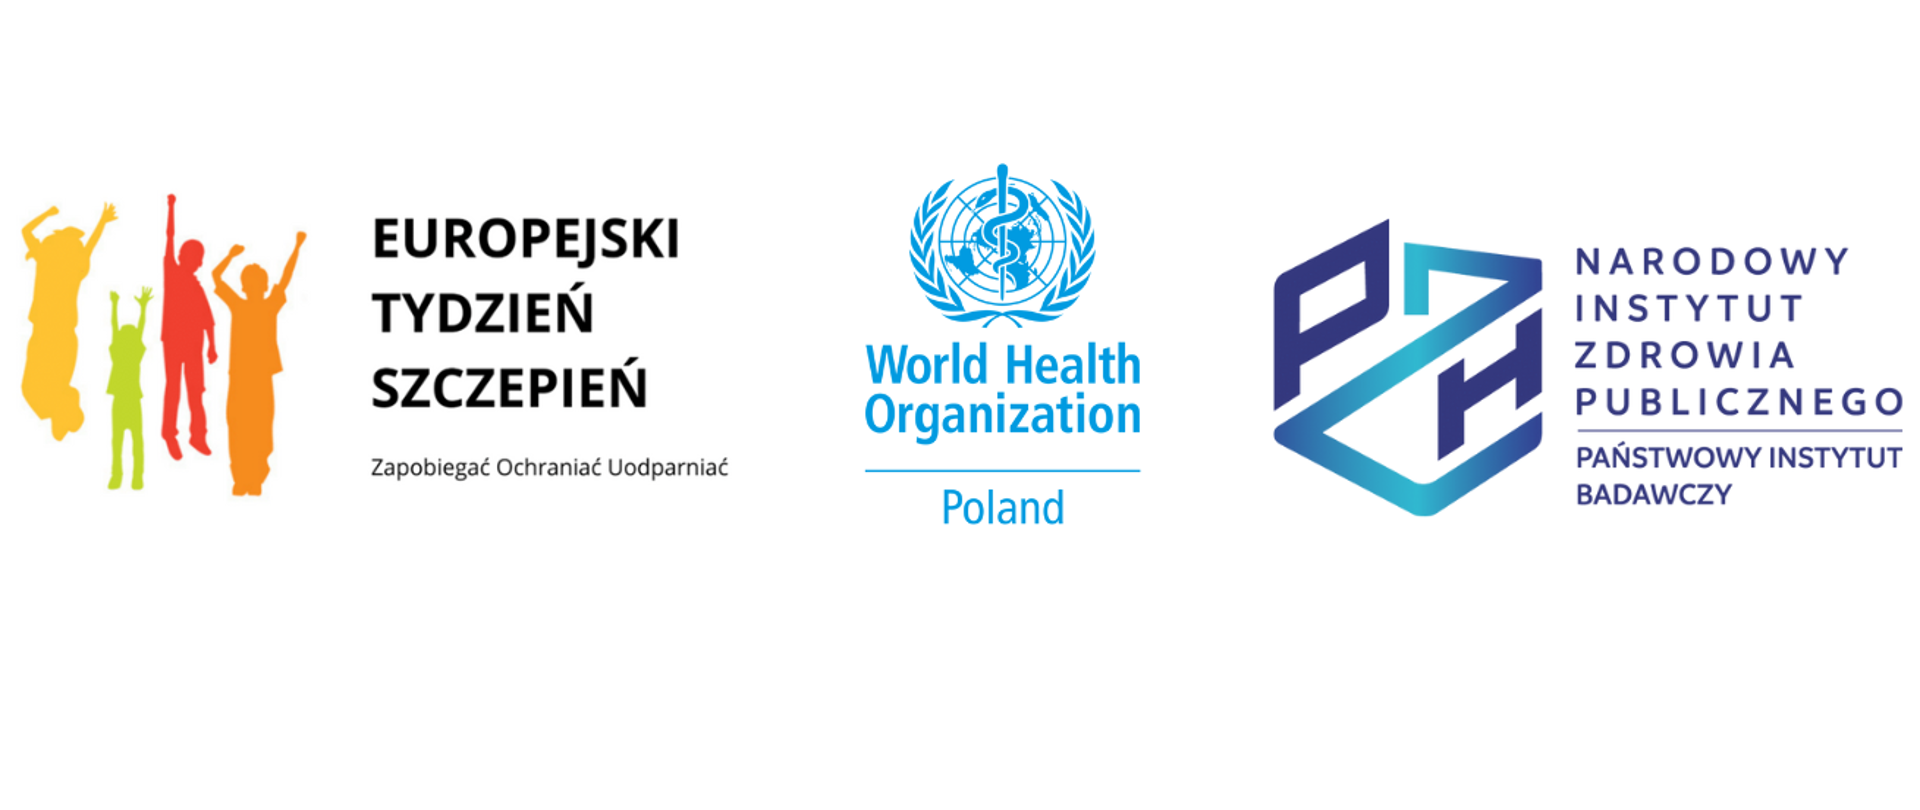 Europejski Tydzień Szczepień - logo, WHO - logo, PZH - logo